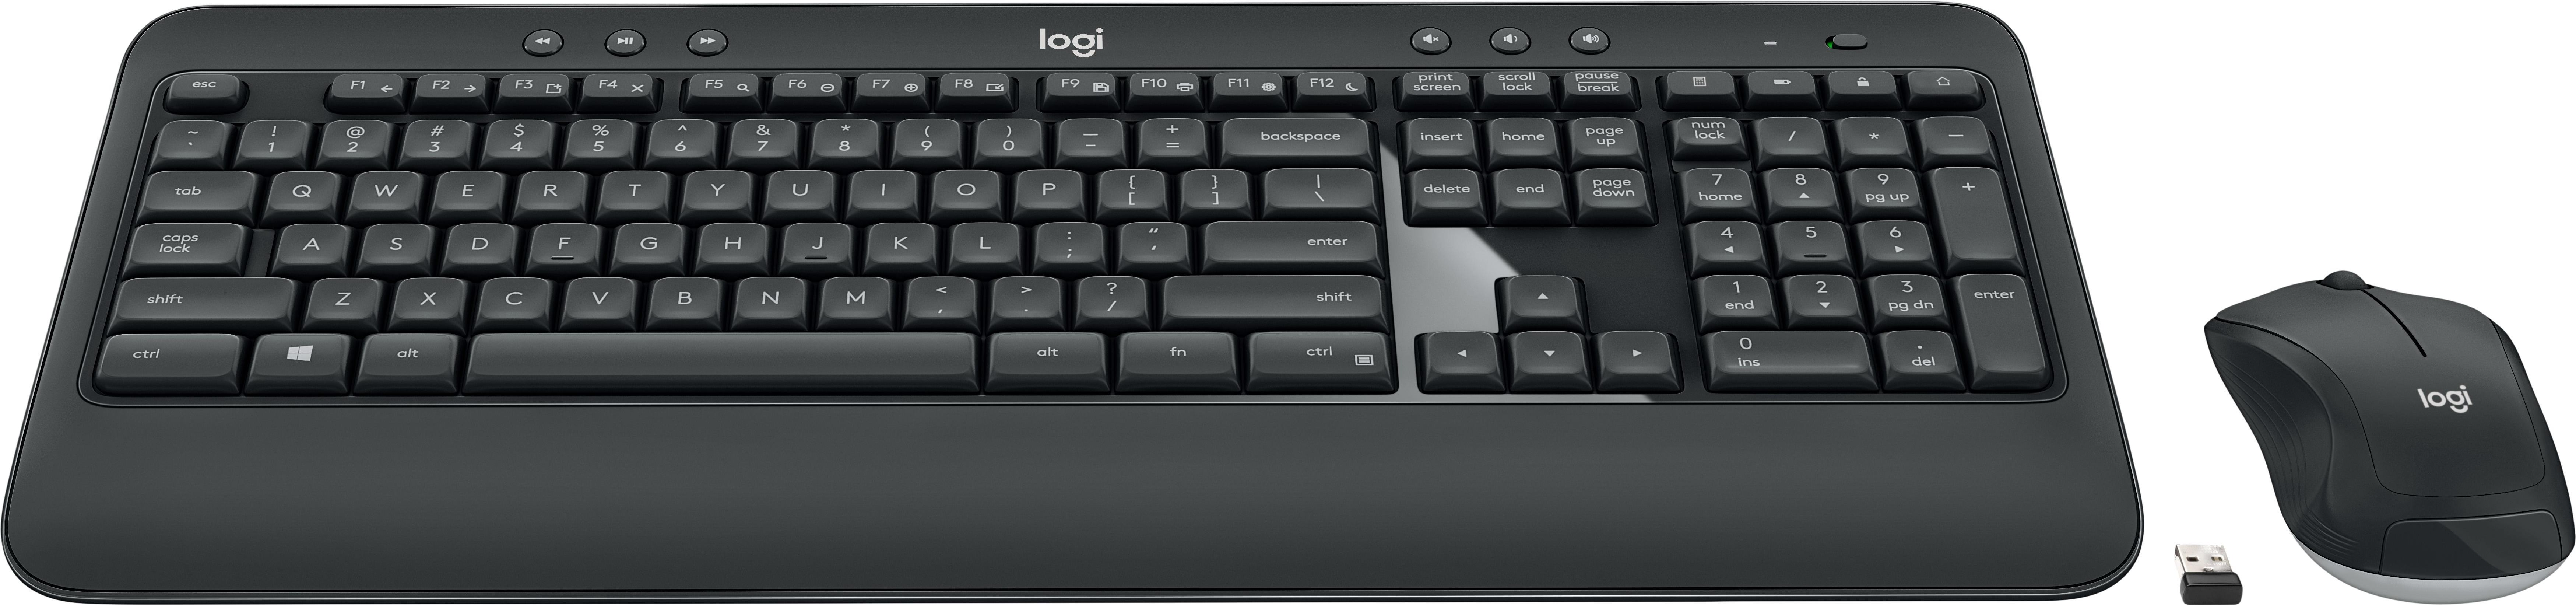 Logitech MK540 Advanced (920-008685)